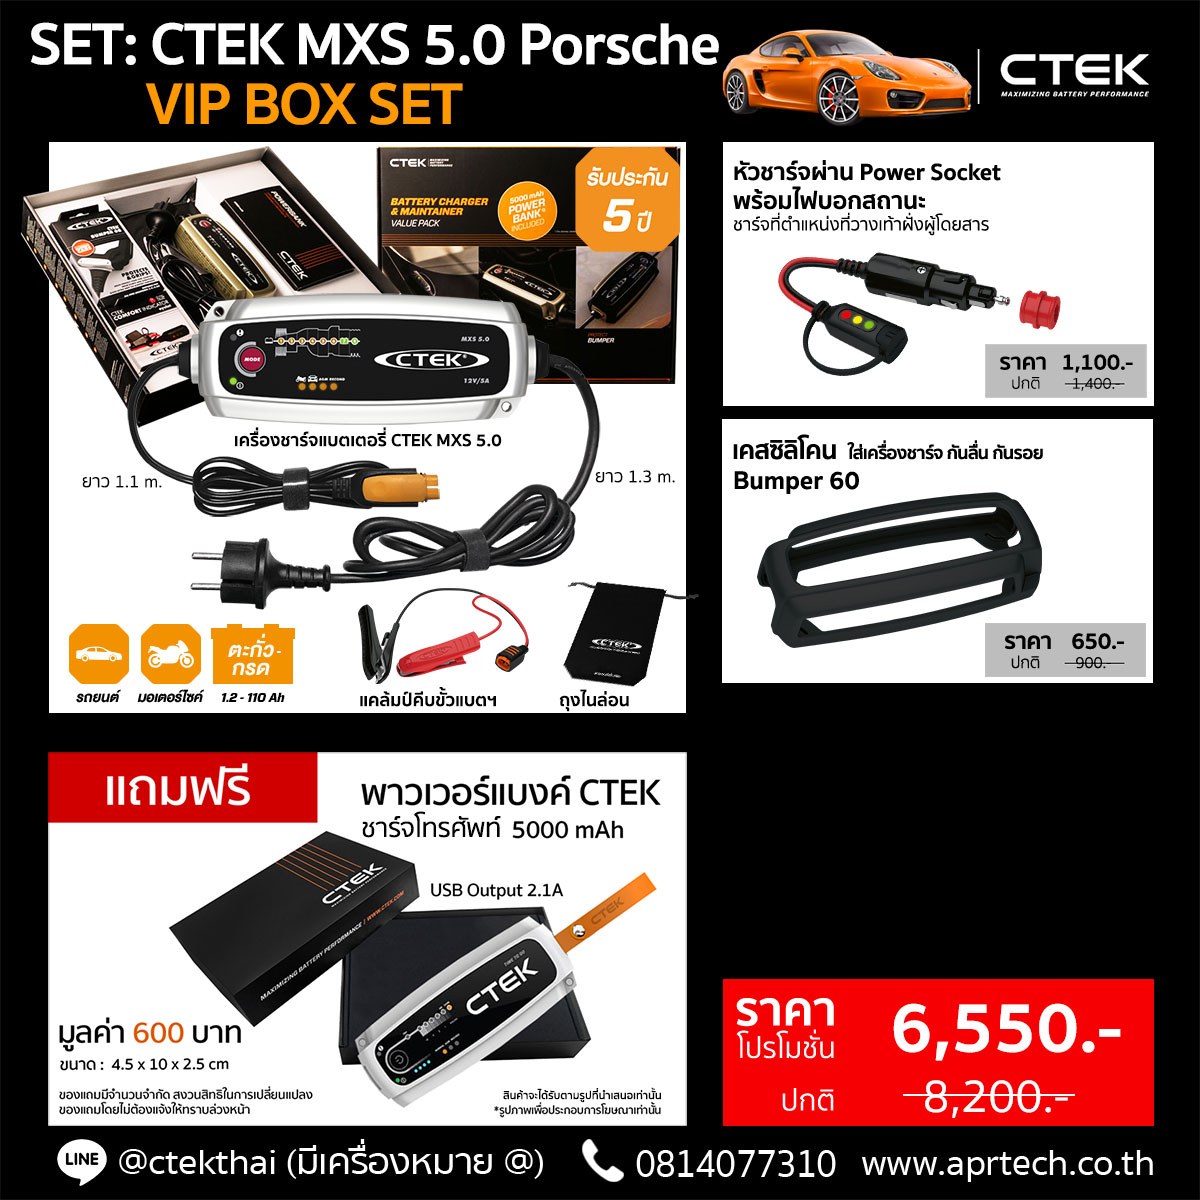 SET CTEK MXS 5.0 Porsche VIP BOX SET (CTEK MXS 5.0 + Cig Plug + Bumper)